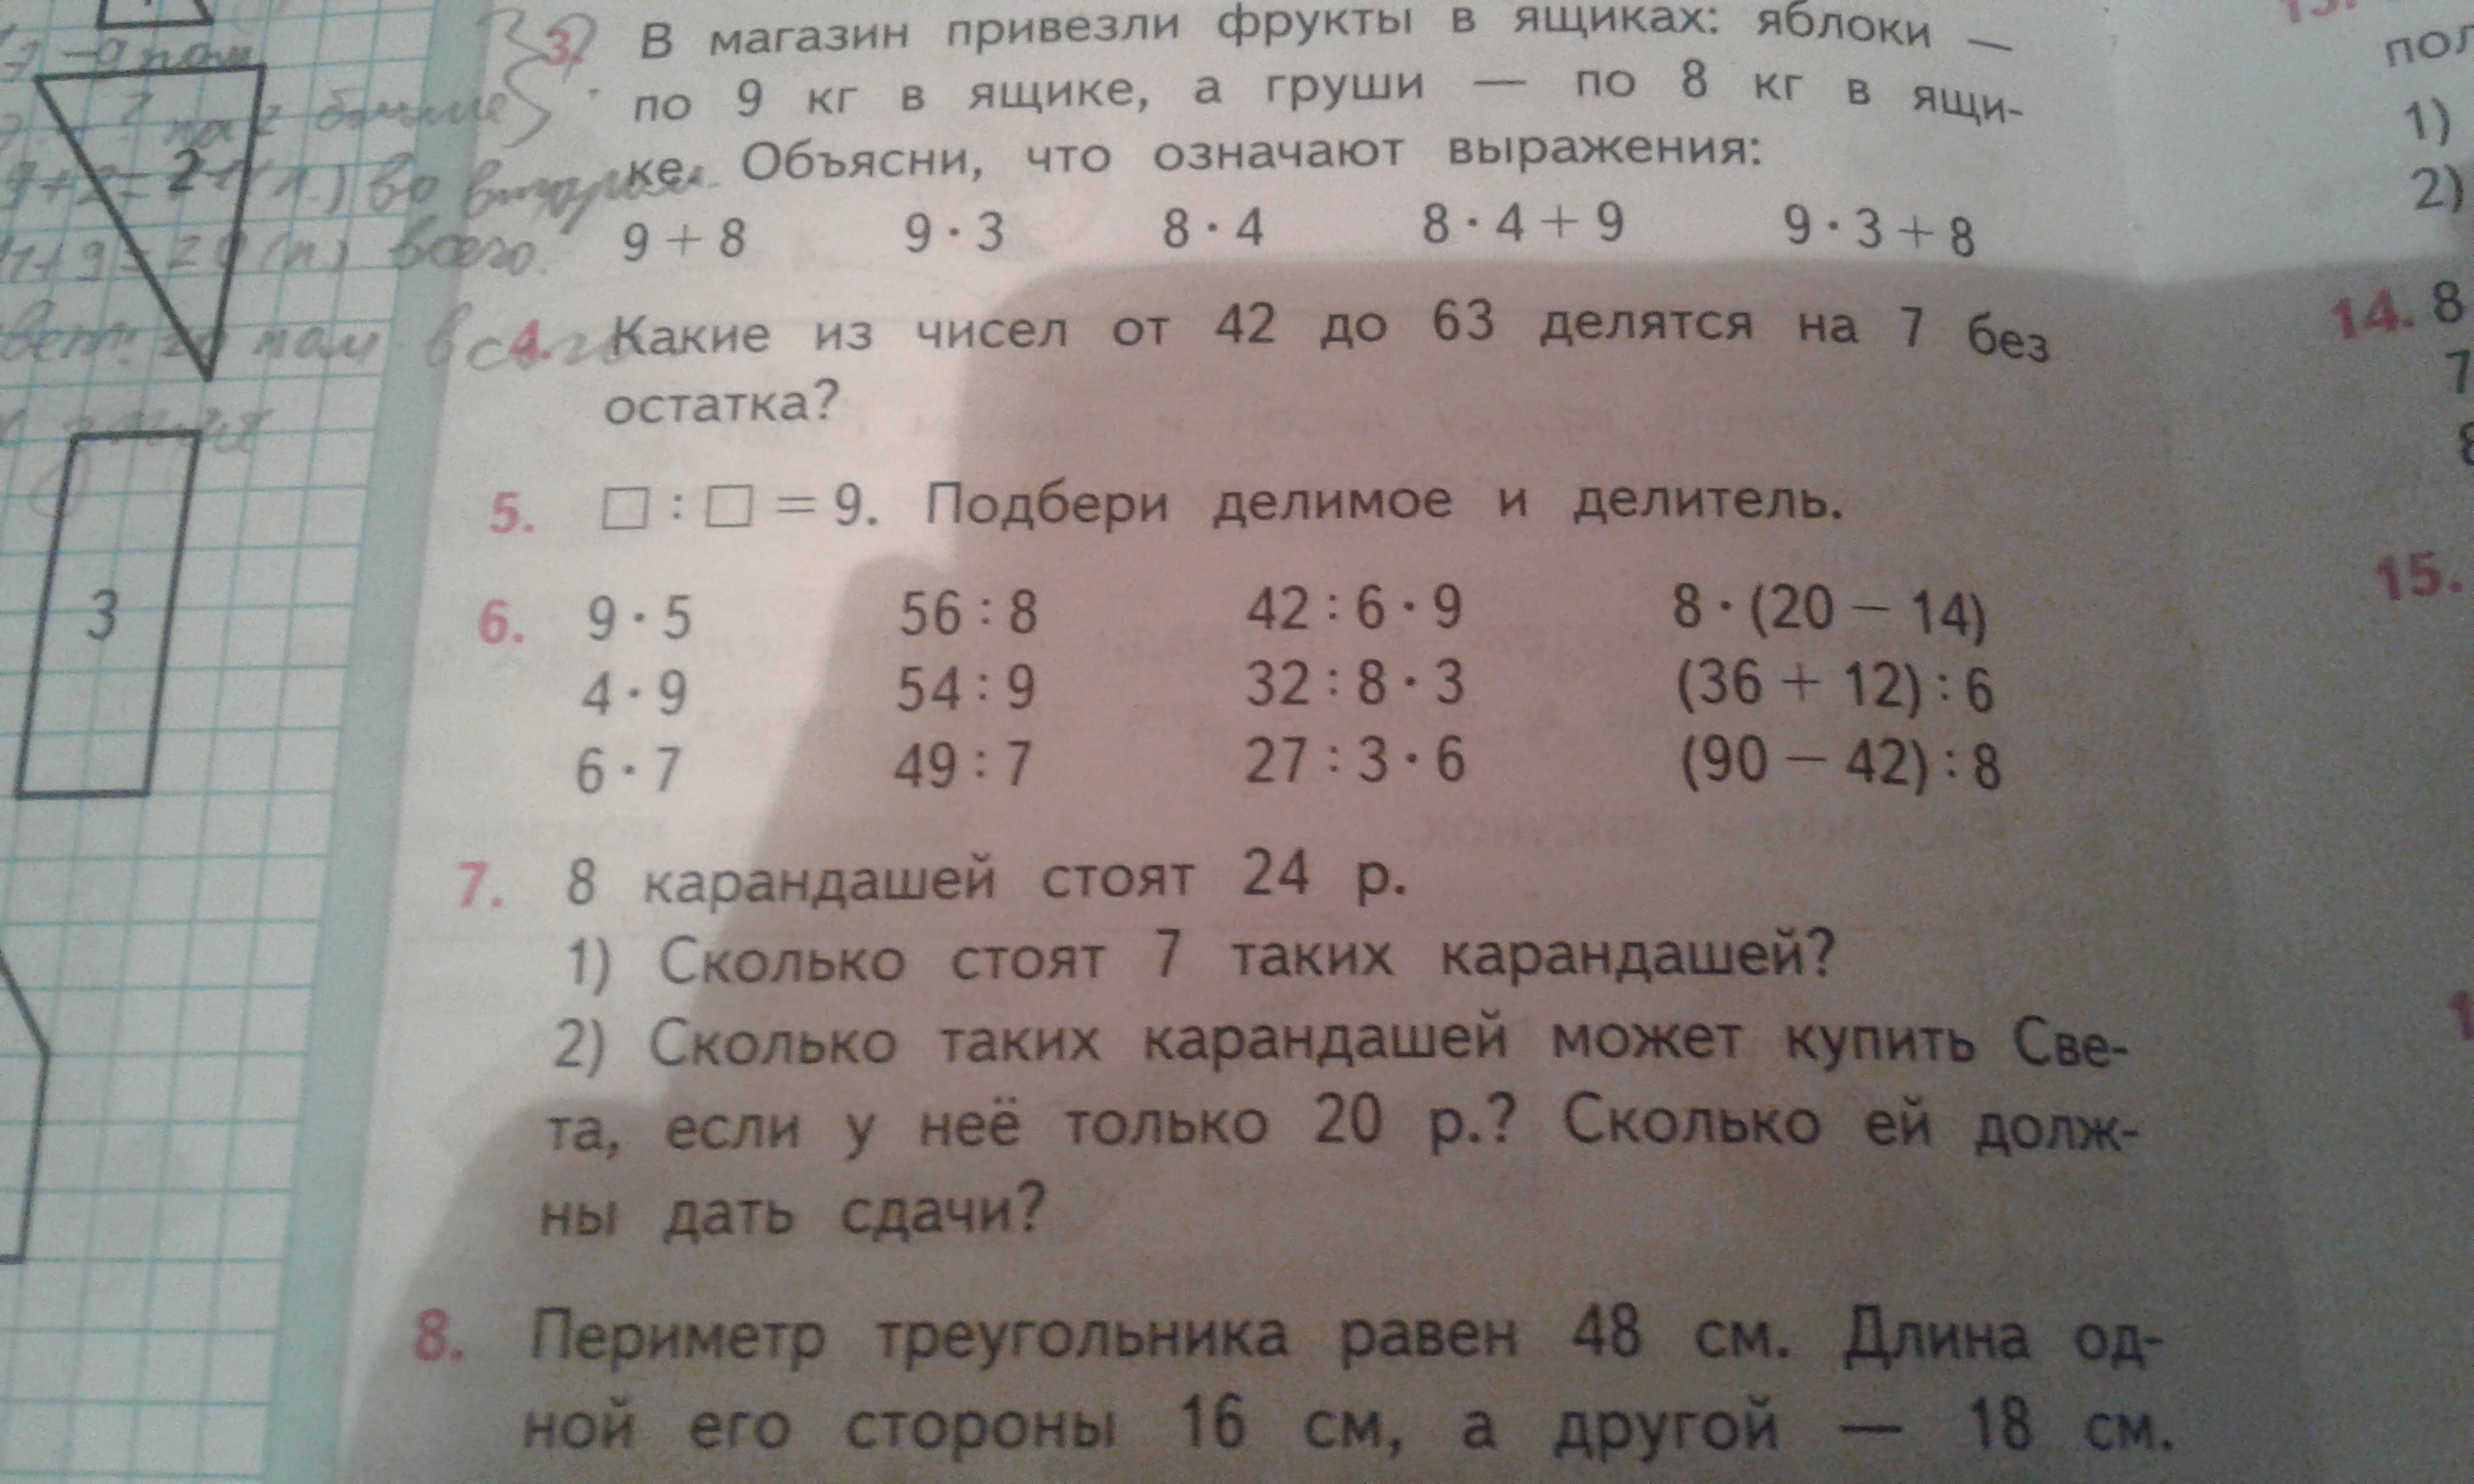 Математика 3 класс страница 66 задача 7. Математика 3 класс 1 часть учебник стр 76 номер 7. Математика 3 класс 1 часть стр 76 номер 2.